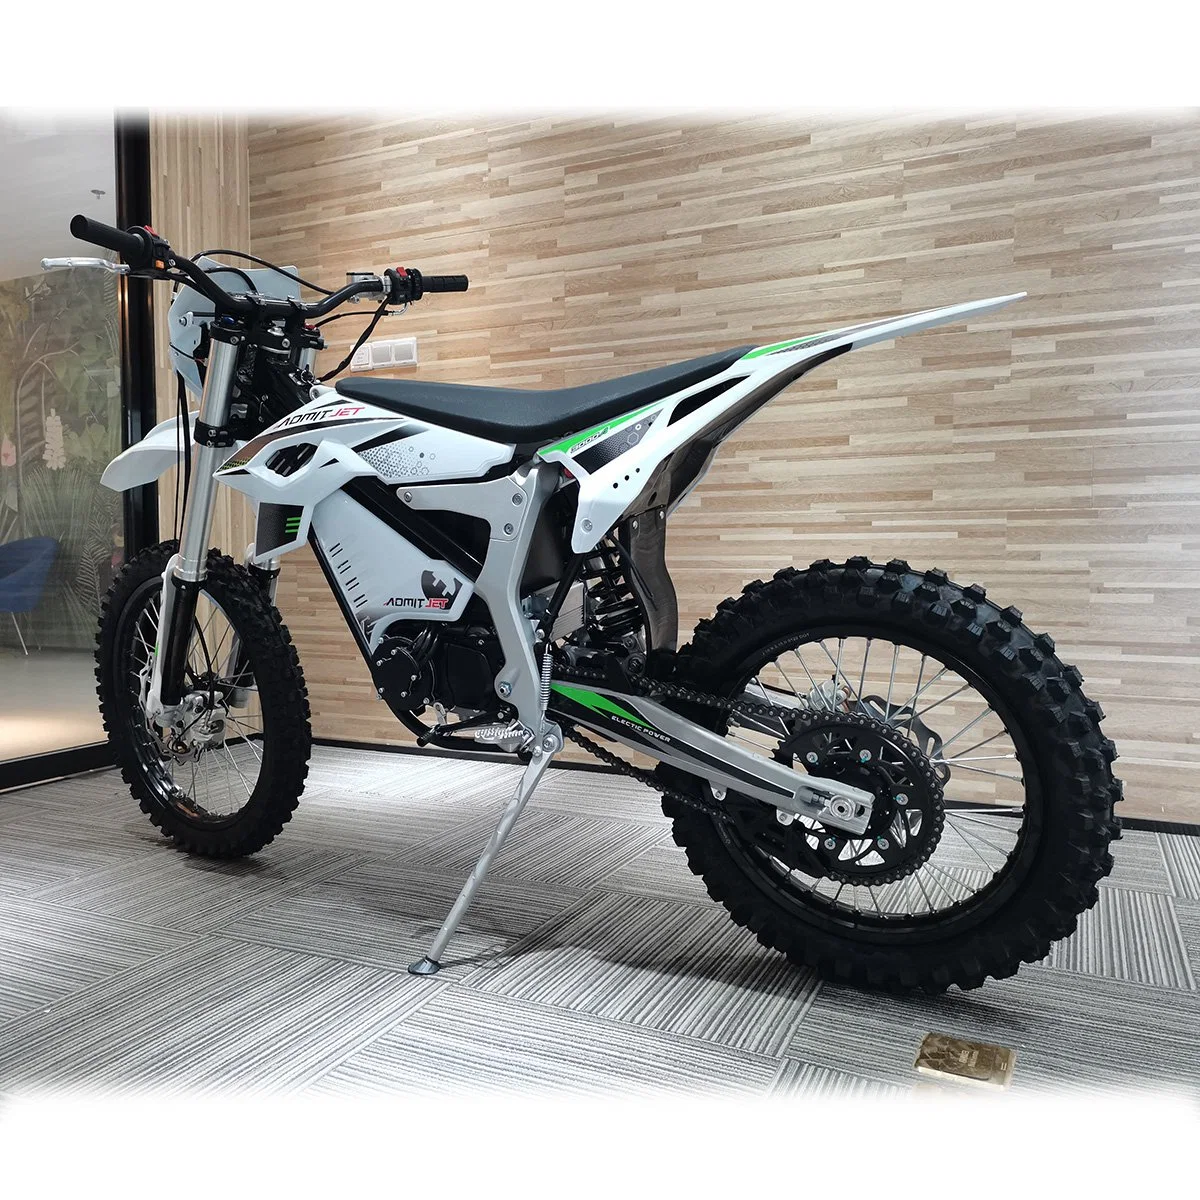 2022 Вт мотор Ebike 12000взрослых Offroad Мото кросс мотоцикл электрический след на велосипеде